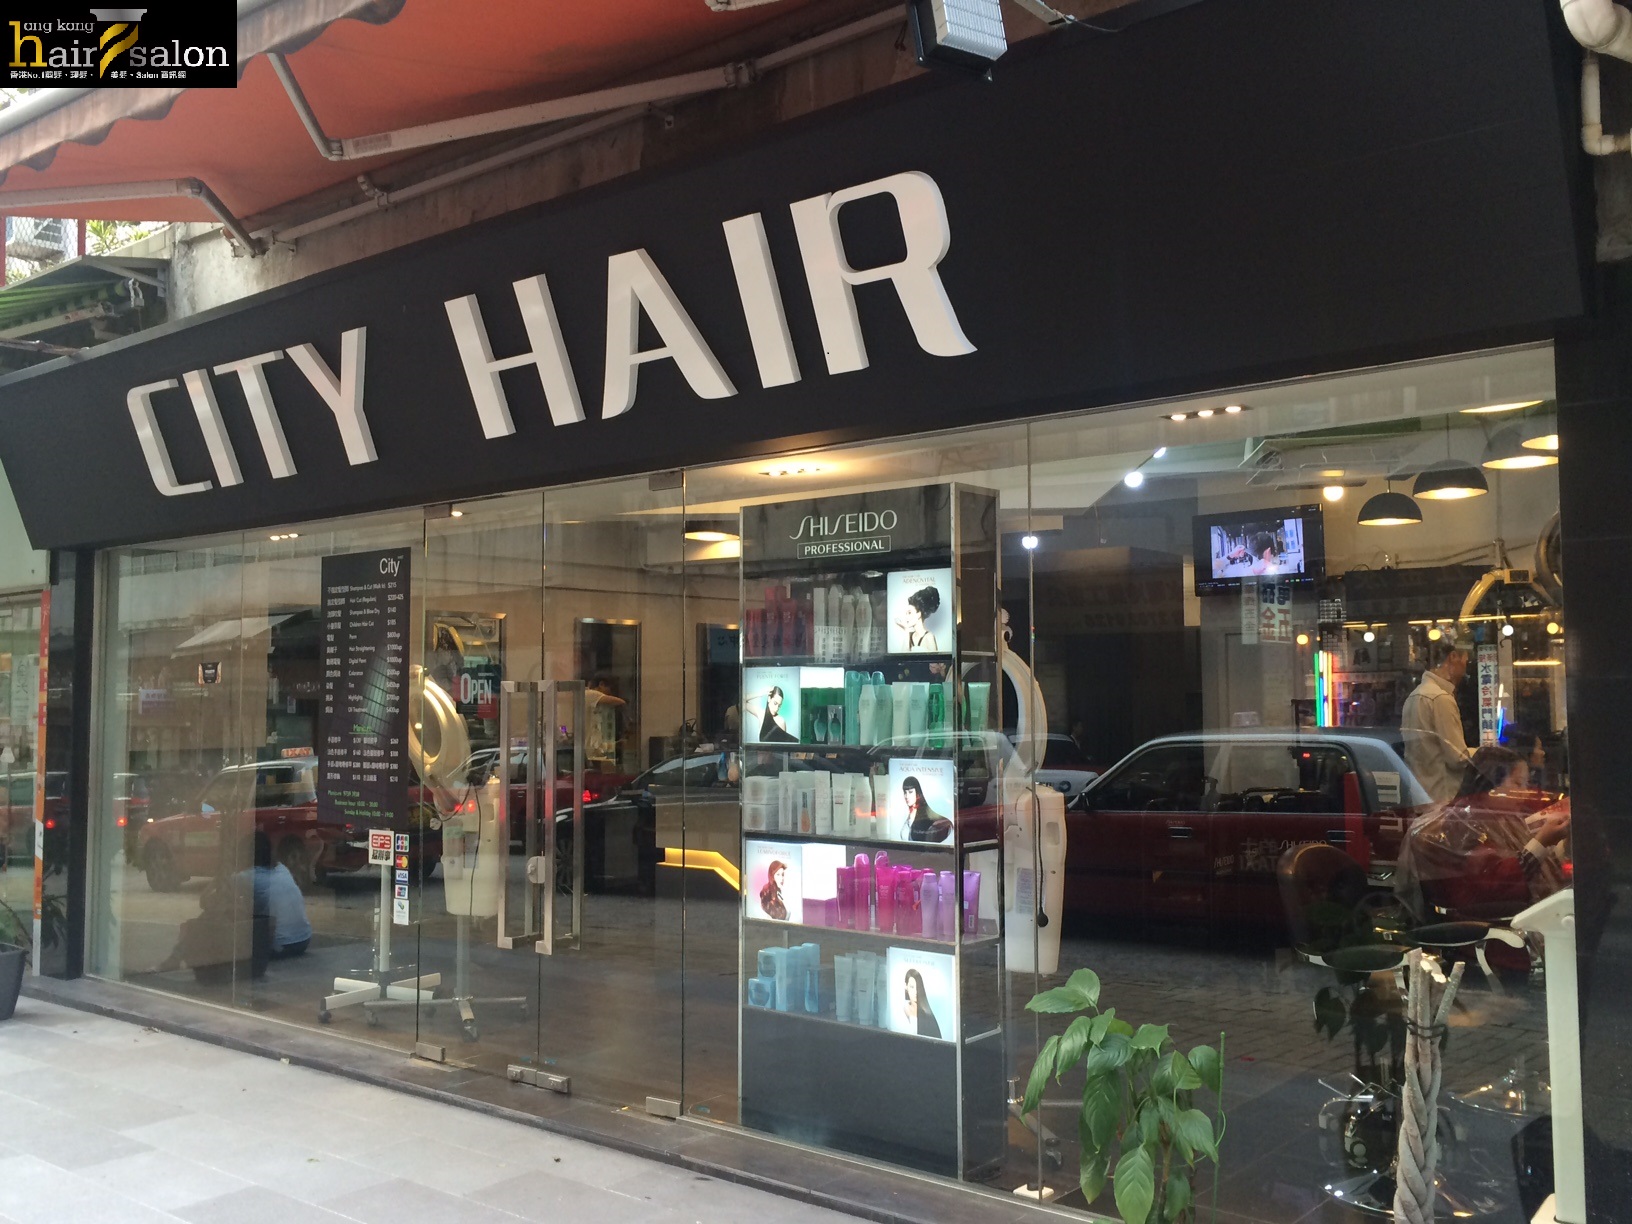 香港美髮網 HK Hair Salon 髮型屋Salon / 髮型師: City HAIR